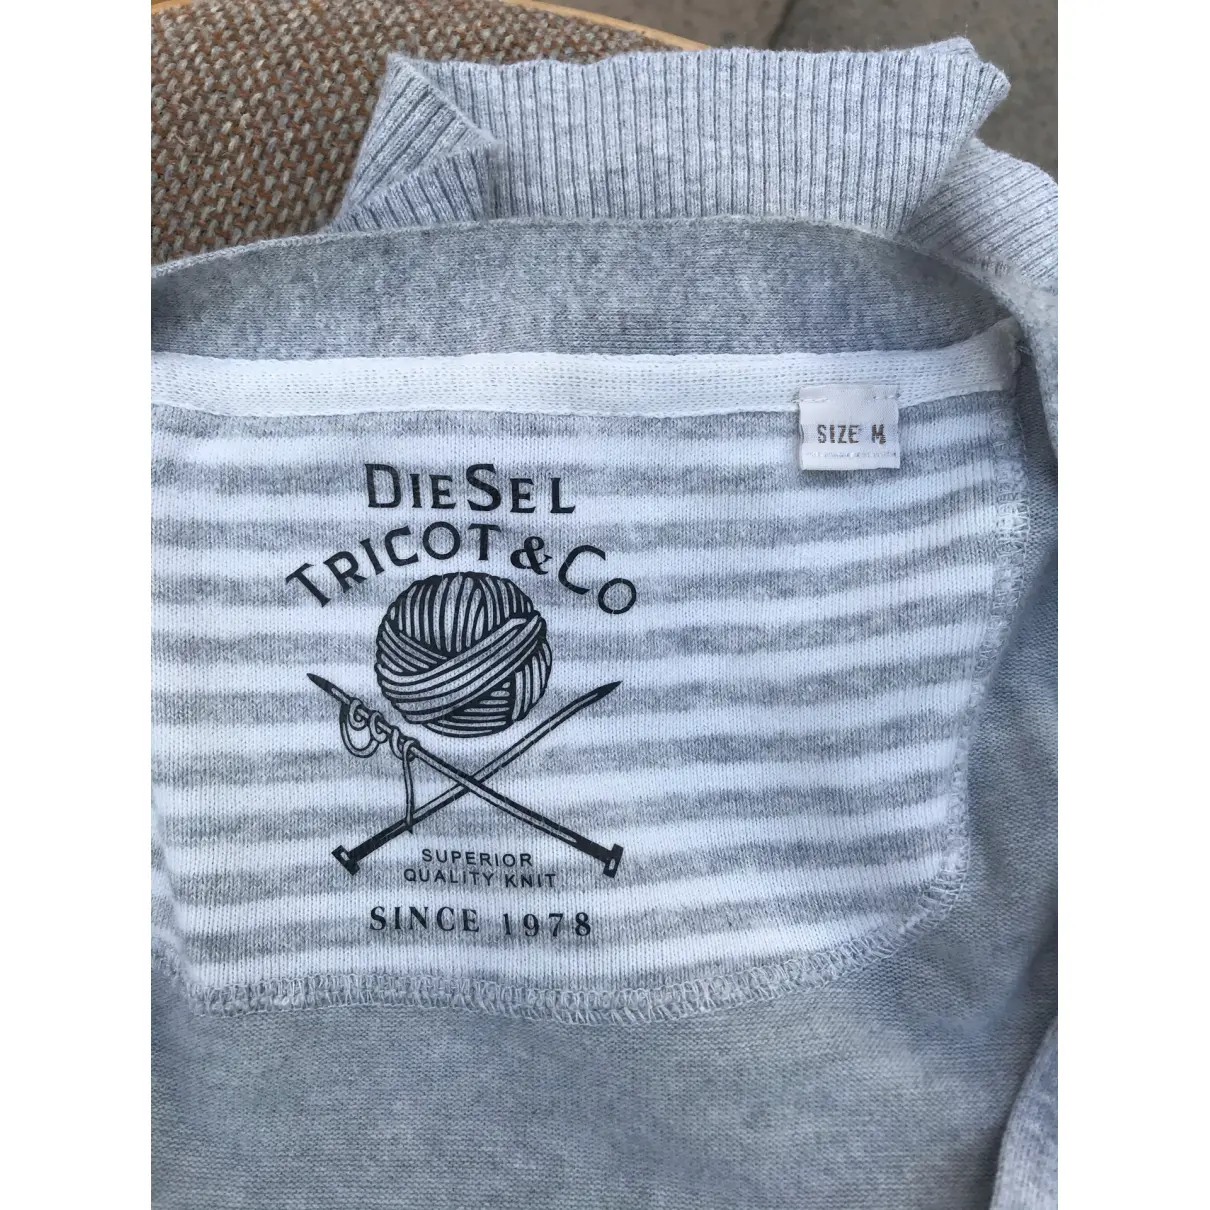 Luxury Diesel Knitwear Women